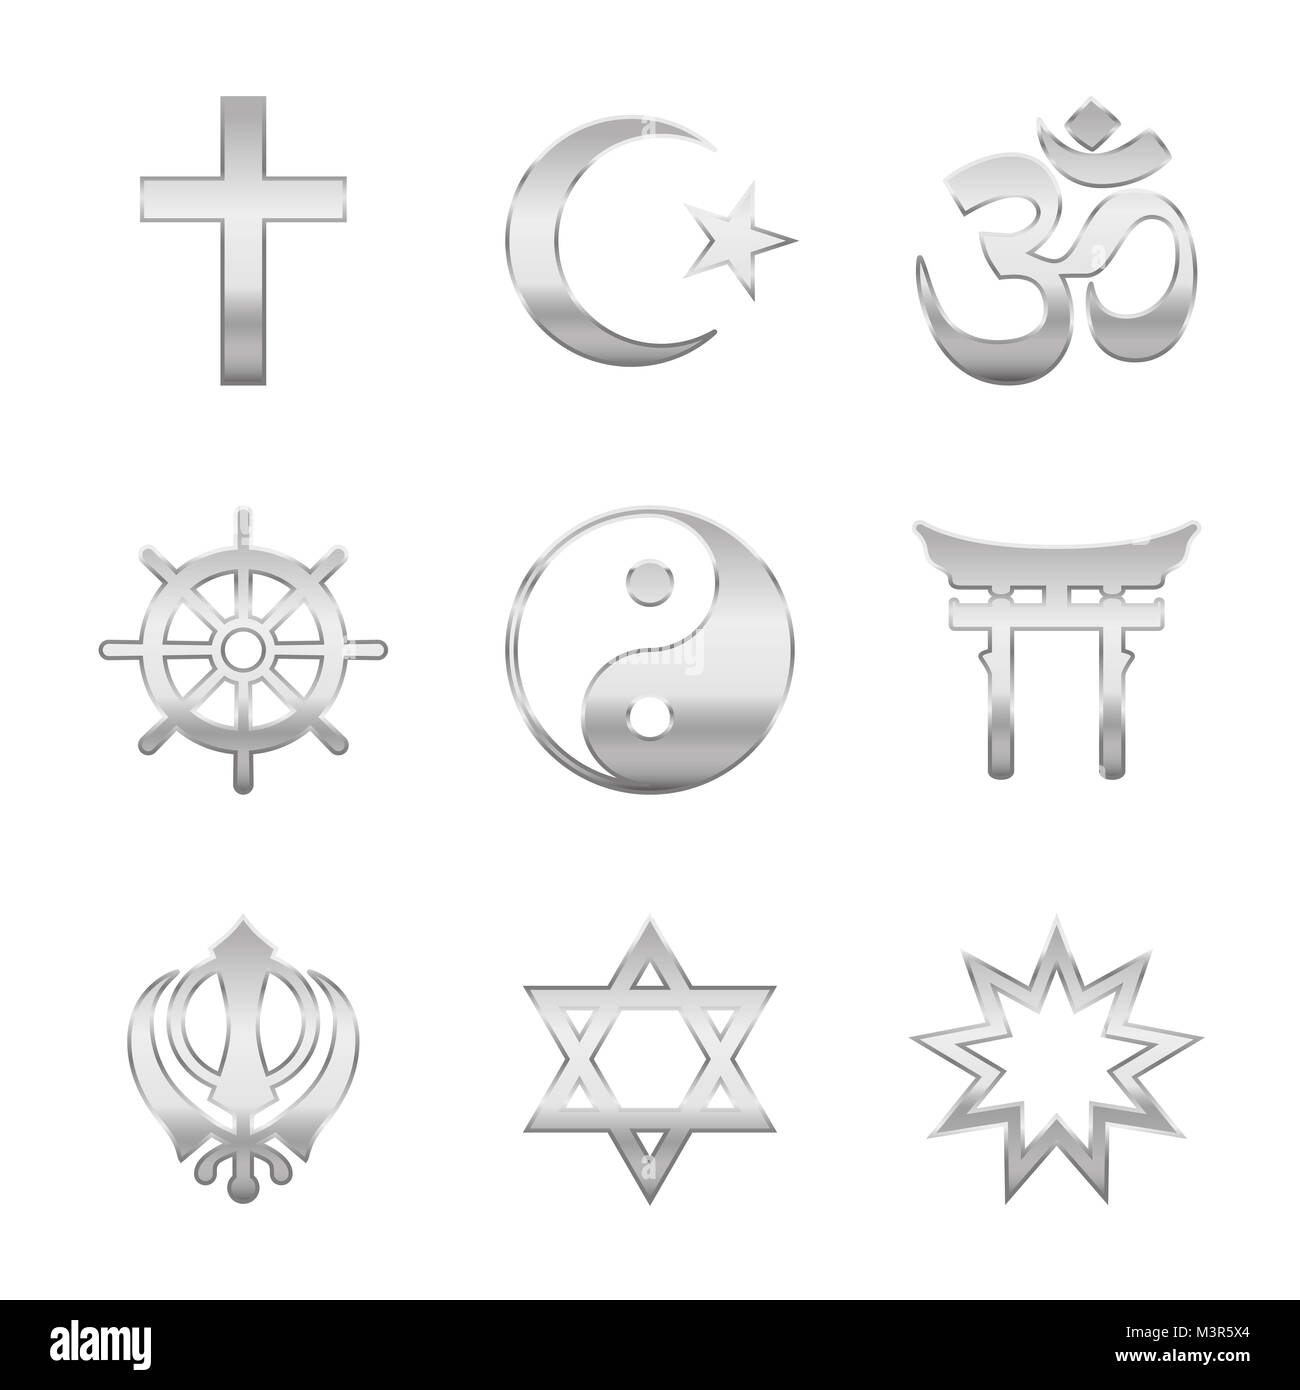 La religione dei simboli. Segni d'argento, i grandi gruppi religiosi e religioni. Il cristianesimo, l'Islam, l'Induismo, il buddismo, il taoismo, lo Shintoismo, Sikhismo, Giudaismo. Foto Stock